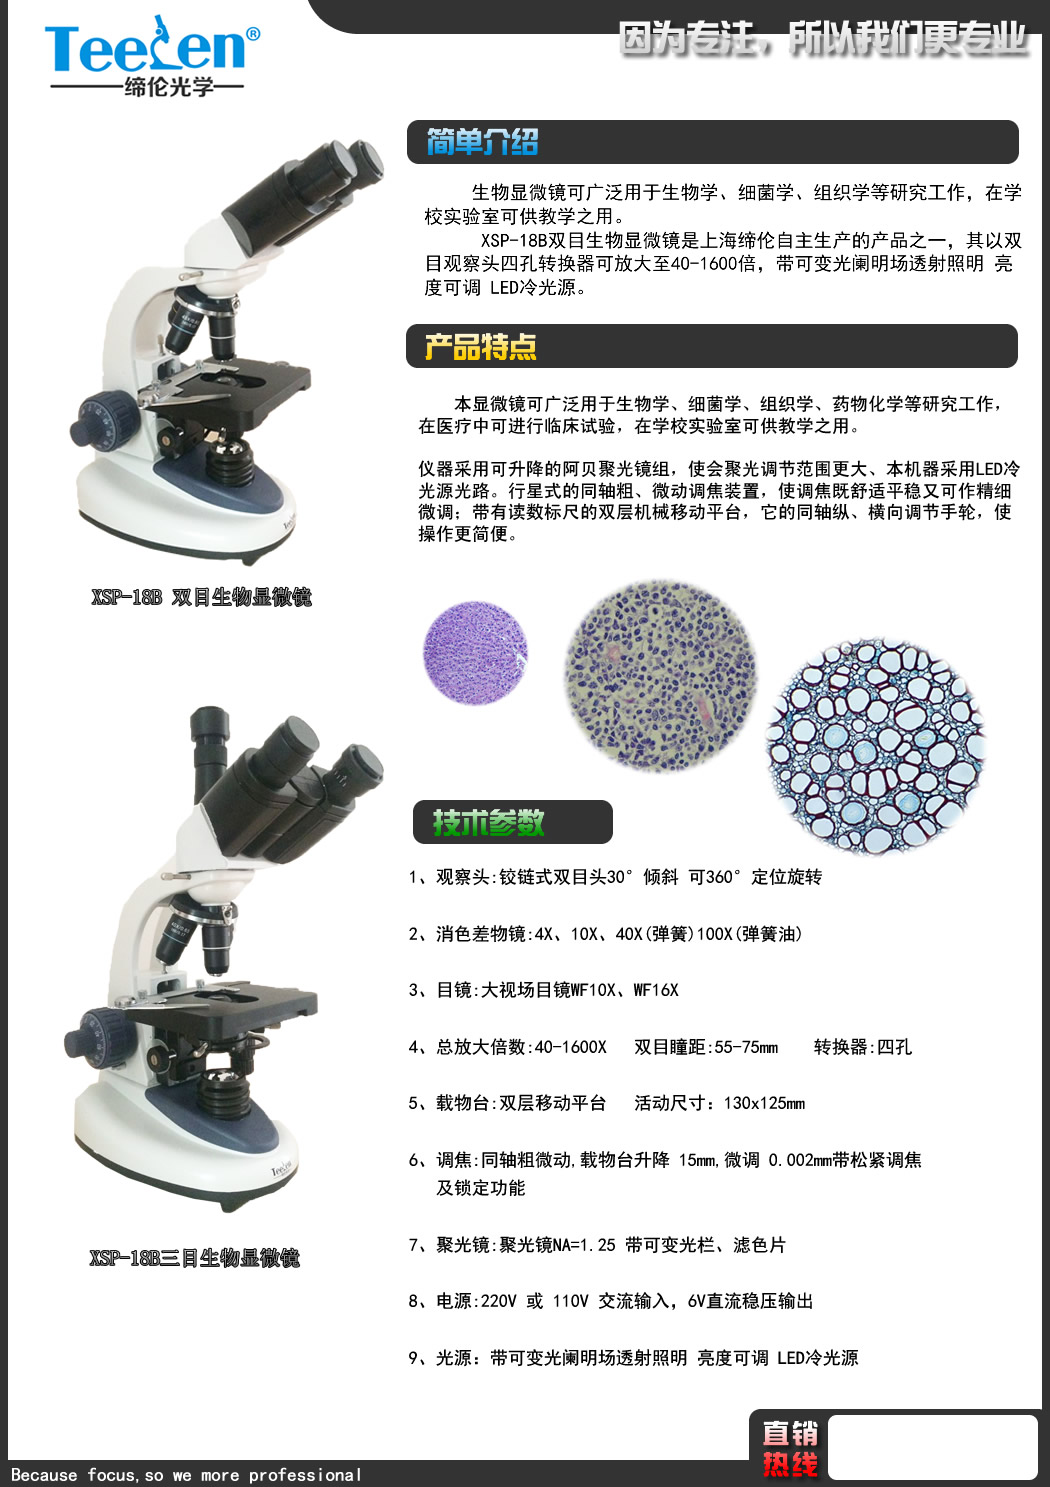 XSP-2CA-LED生物显微镜 武汉简易生物显微镜销售